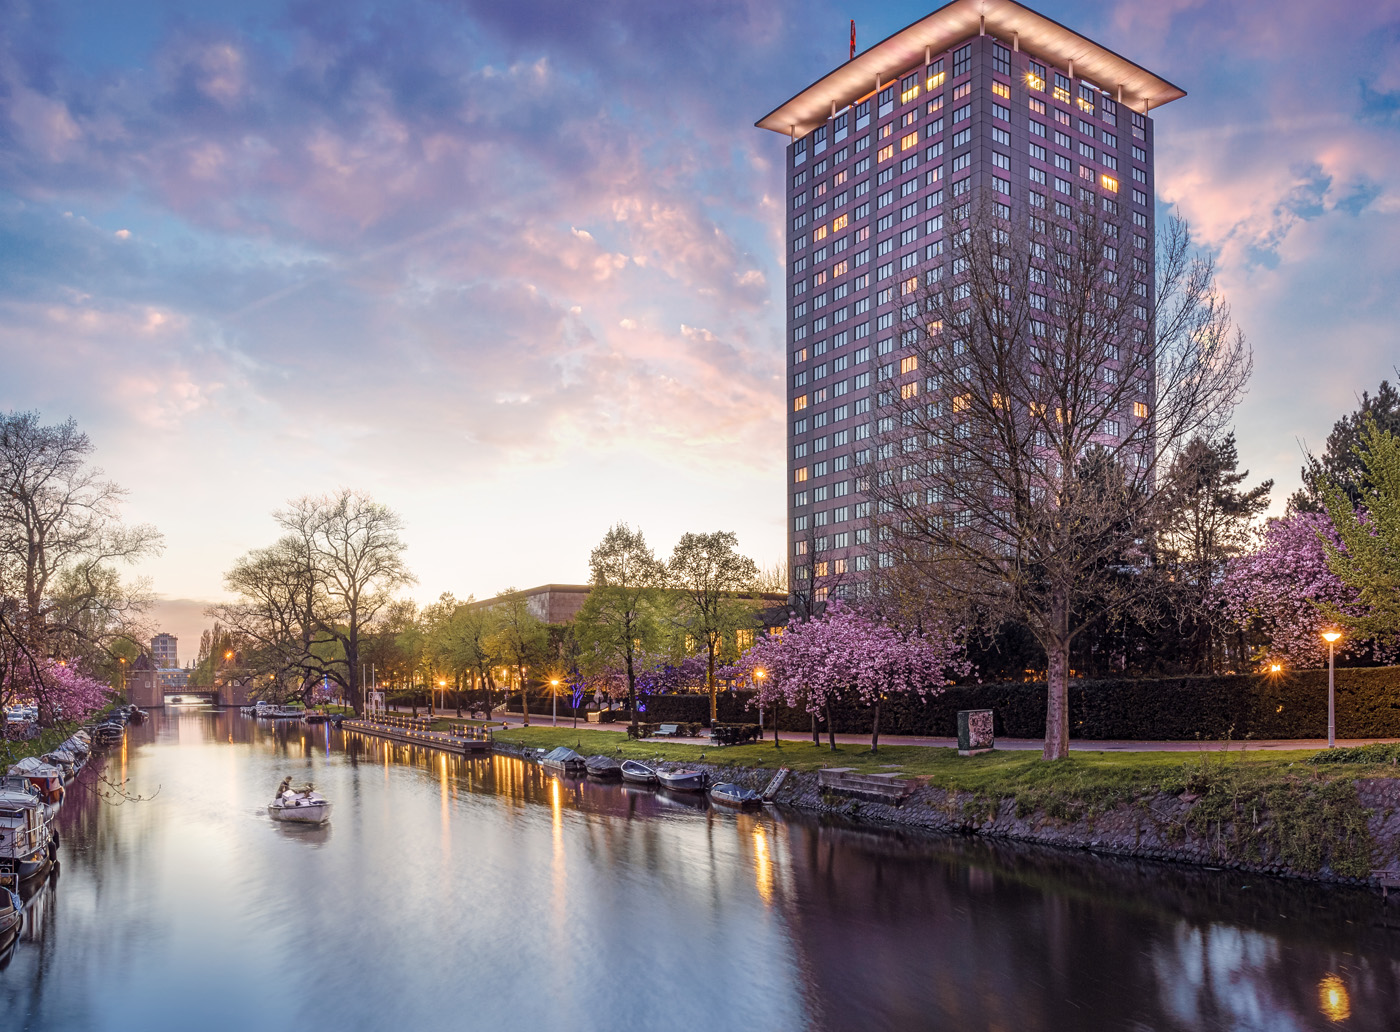 Das Hotel Okura Amsterdam gehört zu den führenden Hotels Amsterdams und bietet neben japanisch minimalistisch angehauchtem Design, auch gleich noch 2 weitere Sternerestaurants: das Yamazato Restaurant und das Teppanyaki Restaurant Sazanka